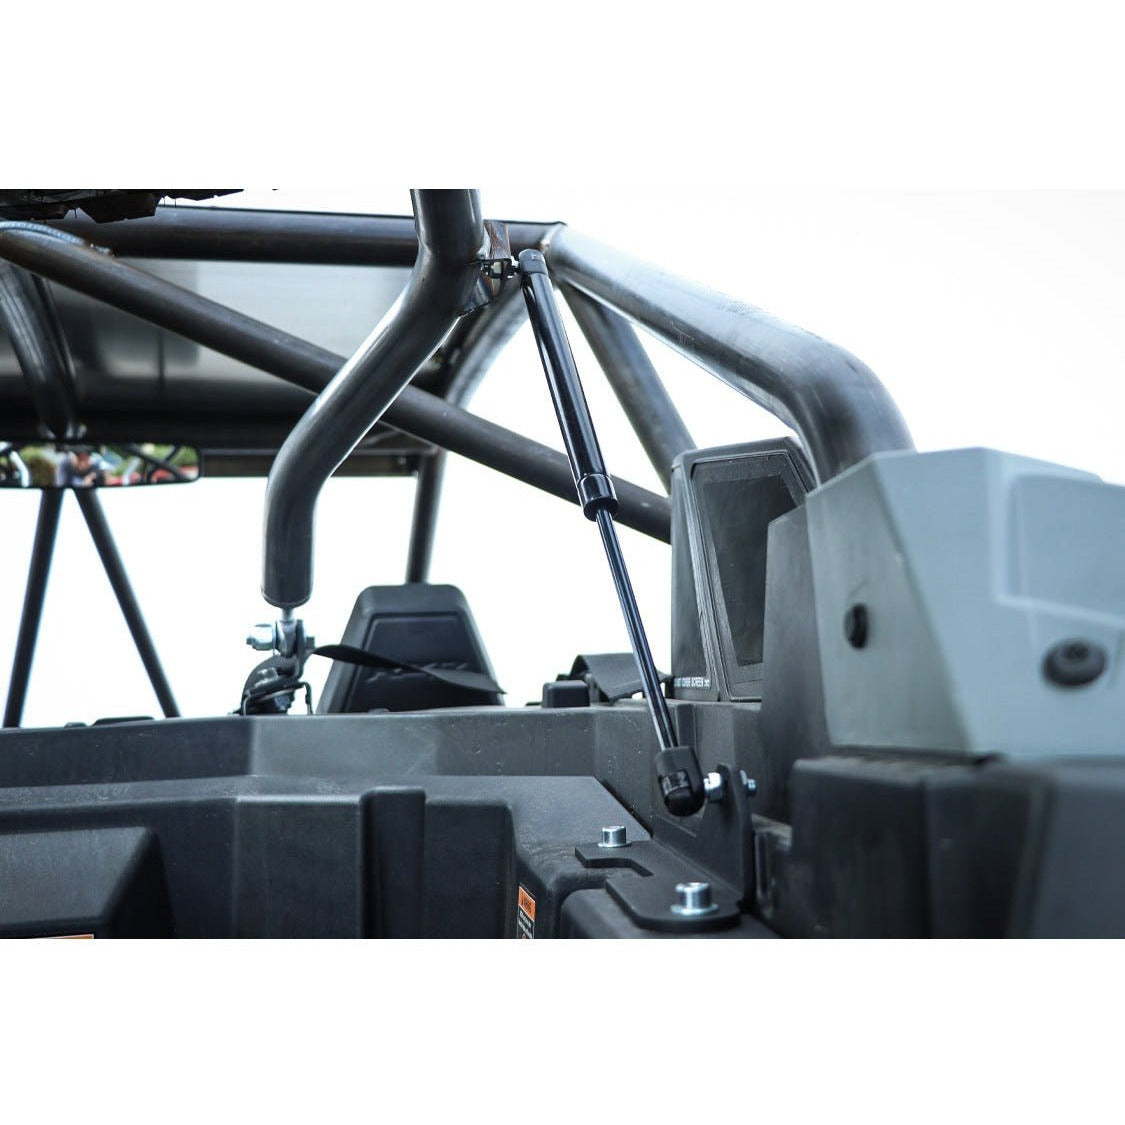 Buy SDR Motorsports RZR XP Rear Bed Storage Bag at UTV Source